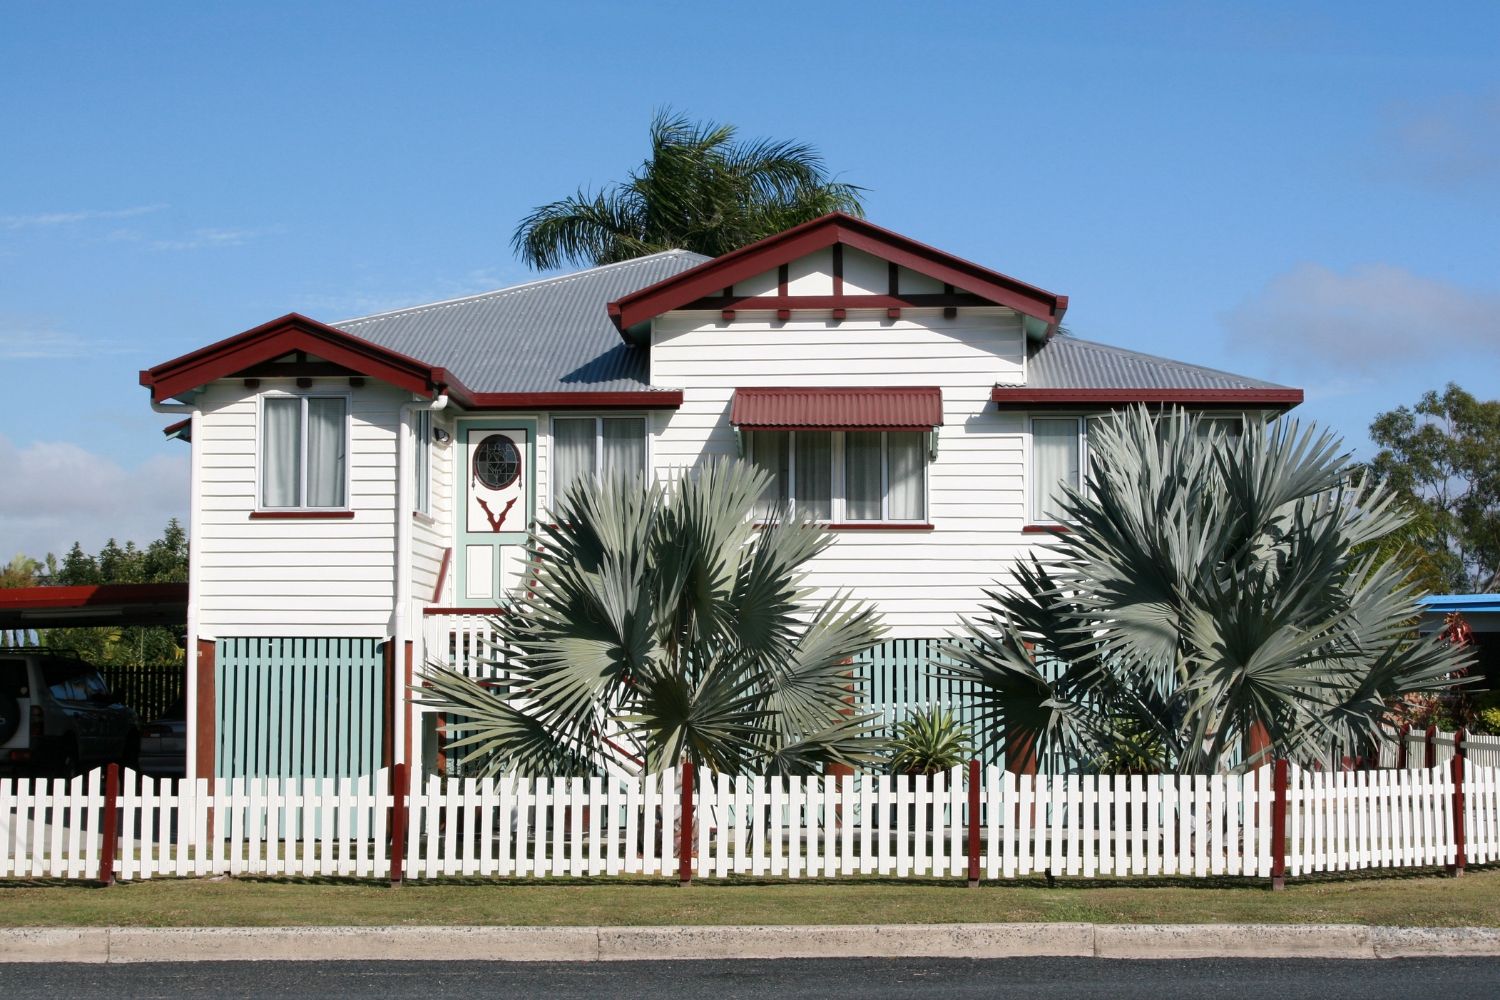 Queensland Homes: 10 Beautiful Queenslanders | Better ...